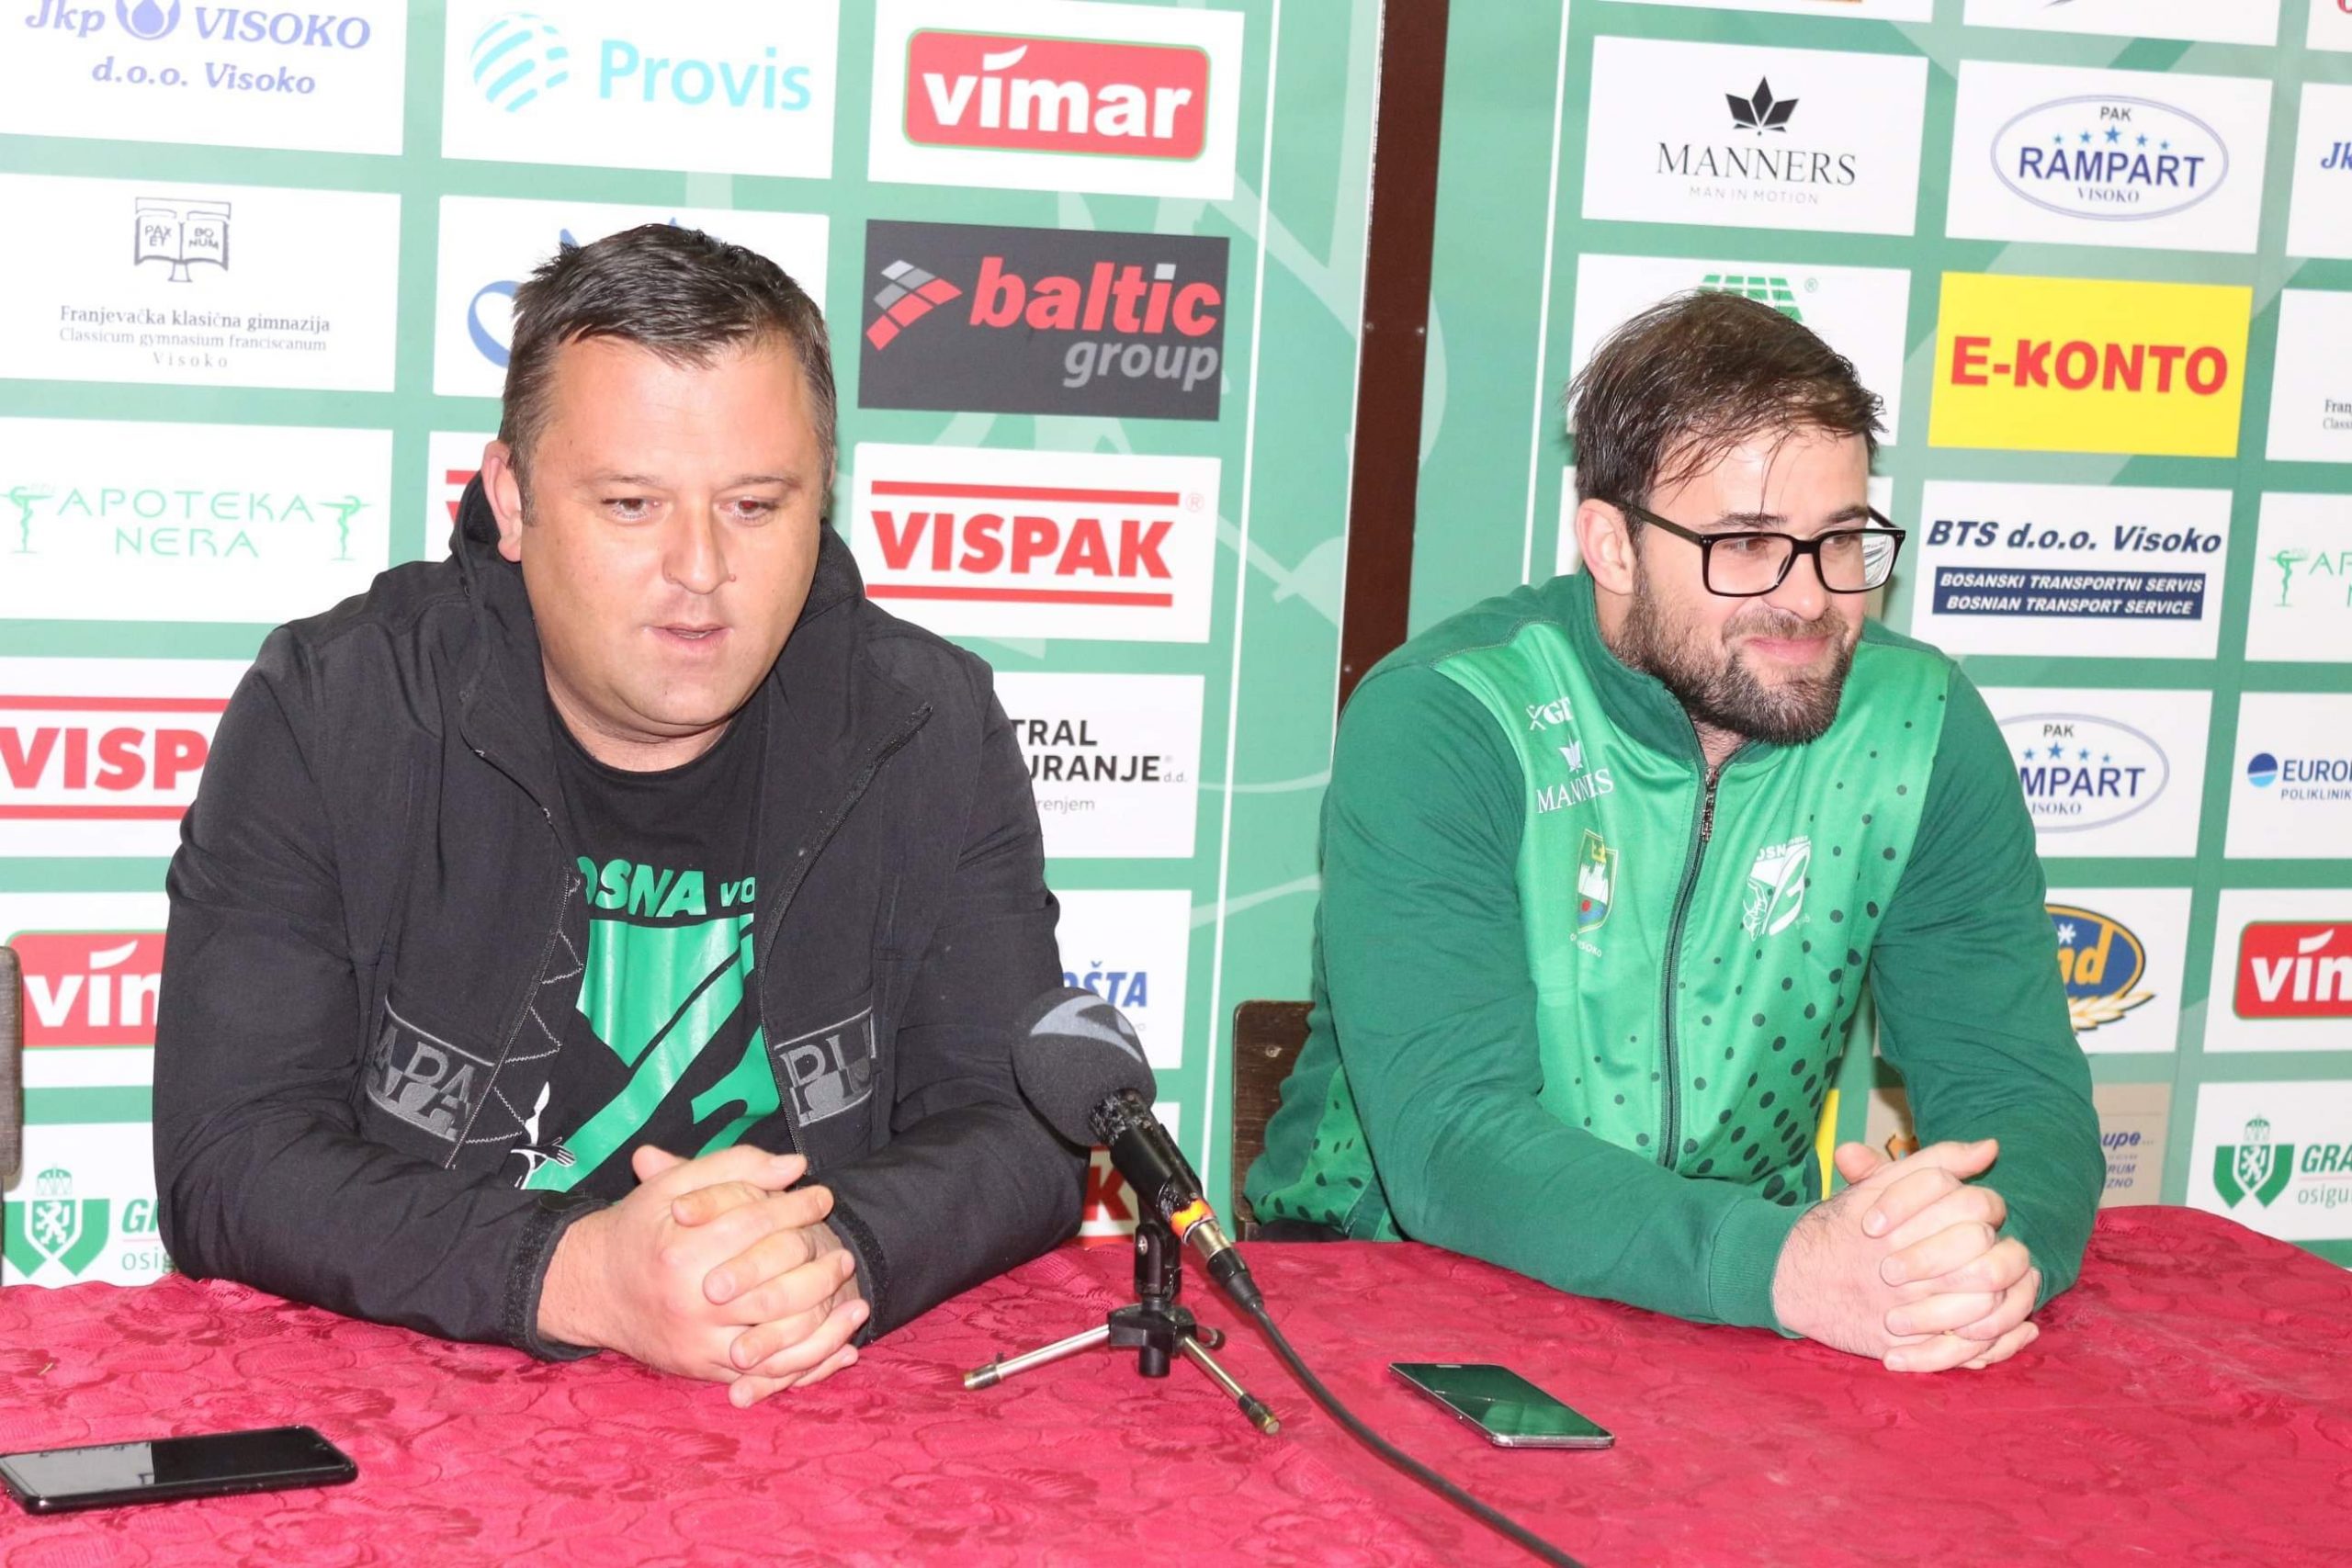 (FOTO) Zvanično / Adnan Harmandić predstavljen kao novi trener RK Bosna Vispak Visoko